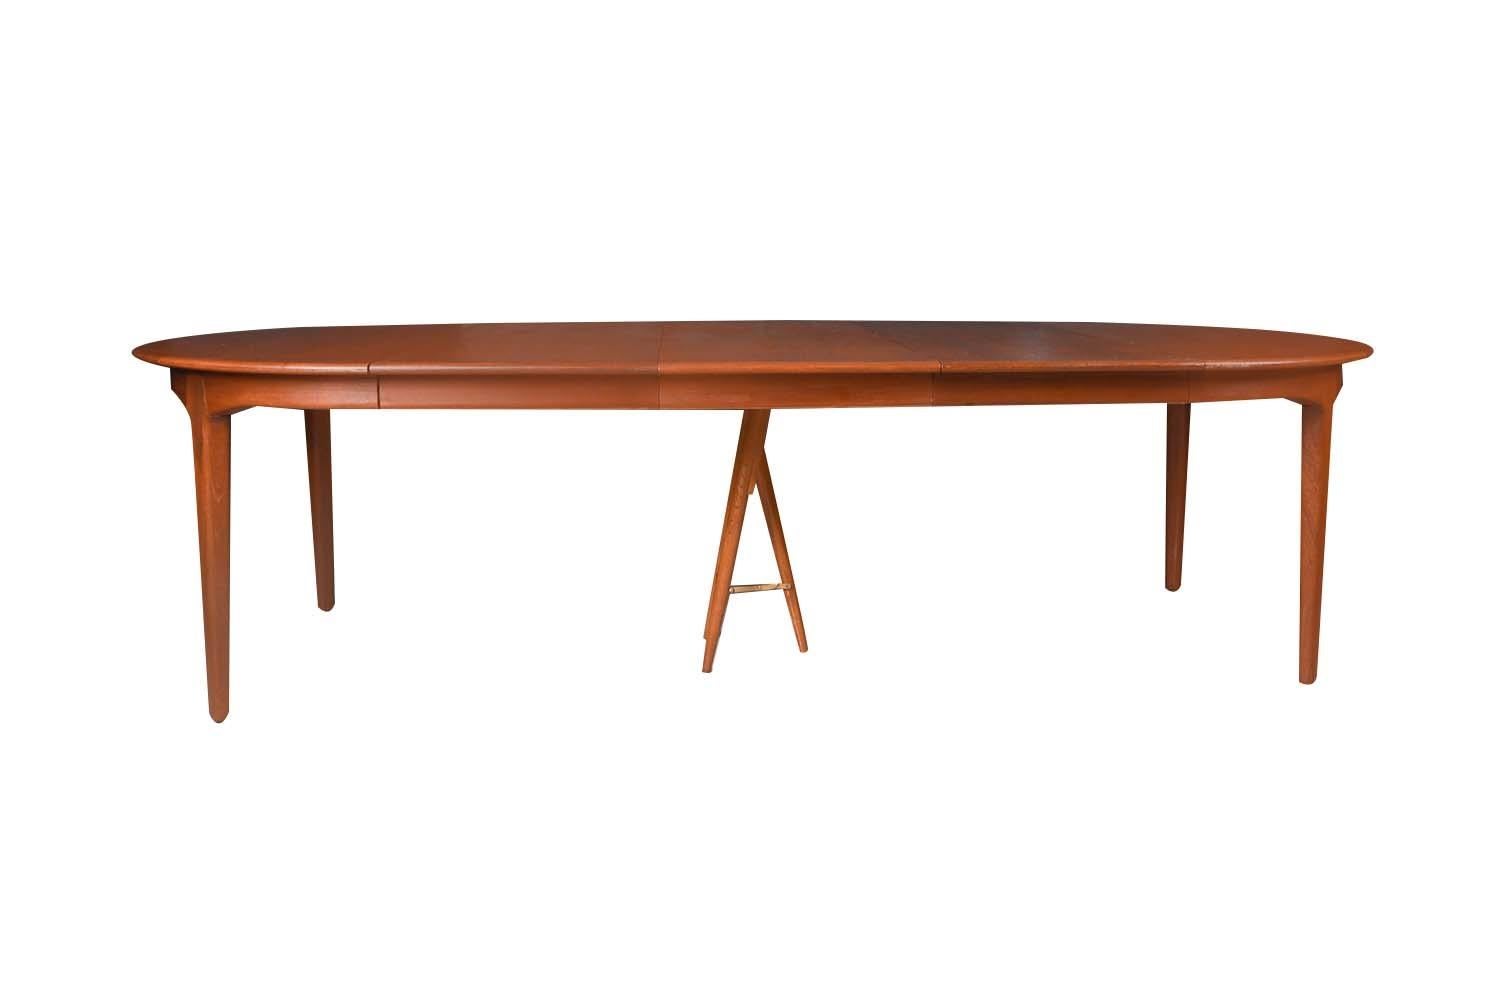 Magnifique grande table à manger ronde/ovale extensible en teck danois du milieu du siècle dernier, modèle 62, créée par le célèbre designer Henning Kjaernulf pour Soro Stolefabrik, vers les années 1960. Le plateau en teck, richement grainé, repose